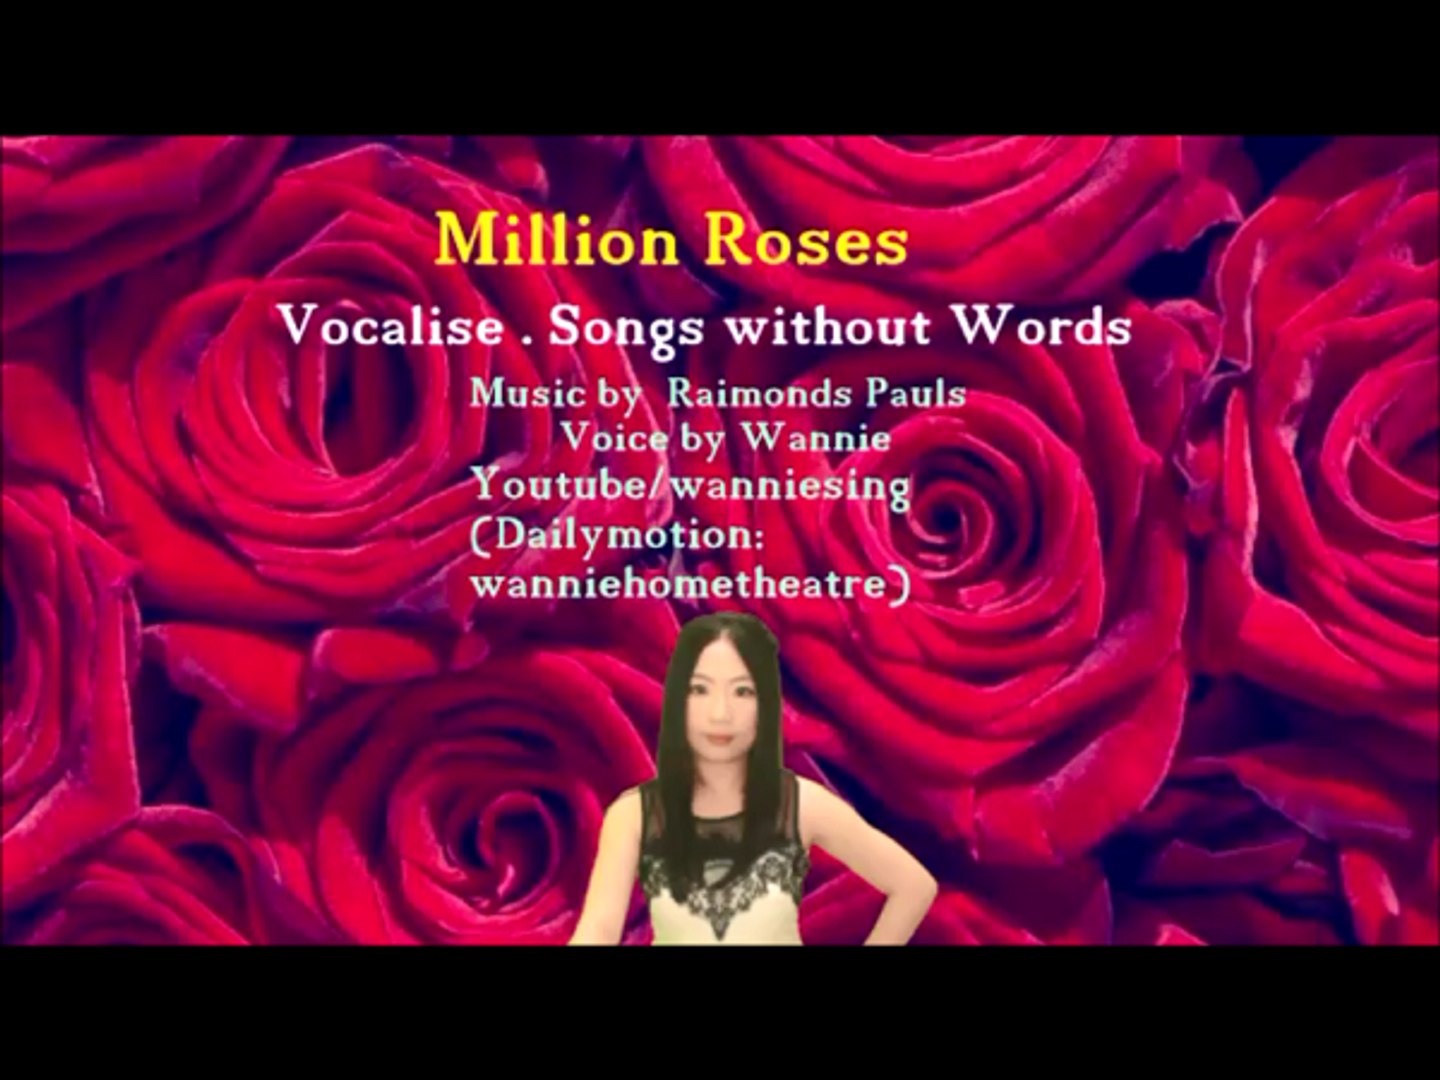 Песня май розы. Миллион алых роз французы поют. Исполнение миллиона алых роз. Миллион алых роз на французском исполняют французы.